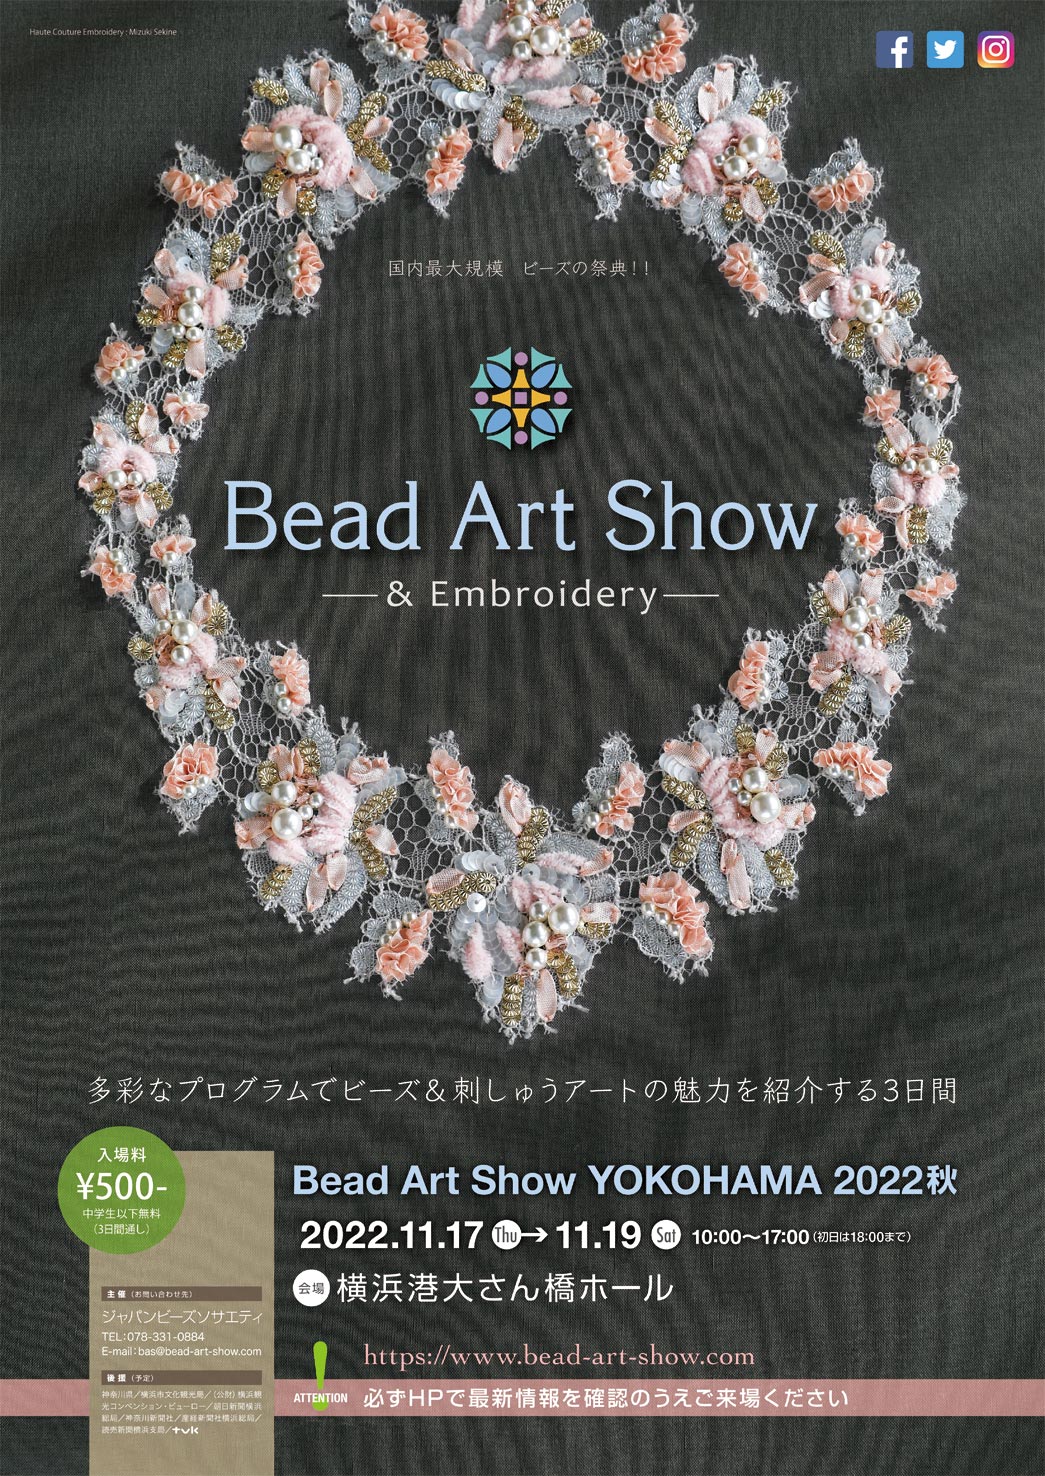 Bead Art Show-YOKOHAMA 2022 秋- - 横浜港 大さん橋 国際客船ターミナル